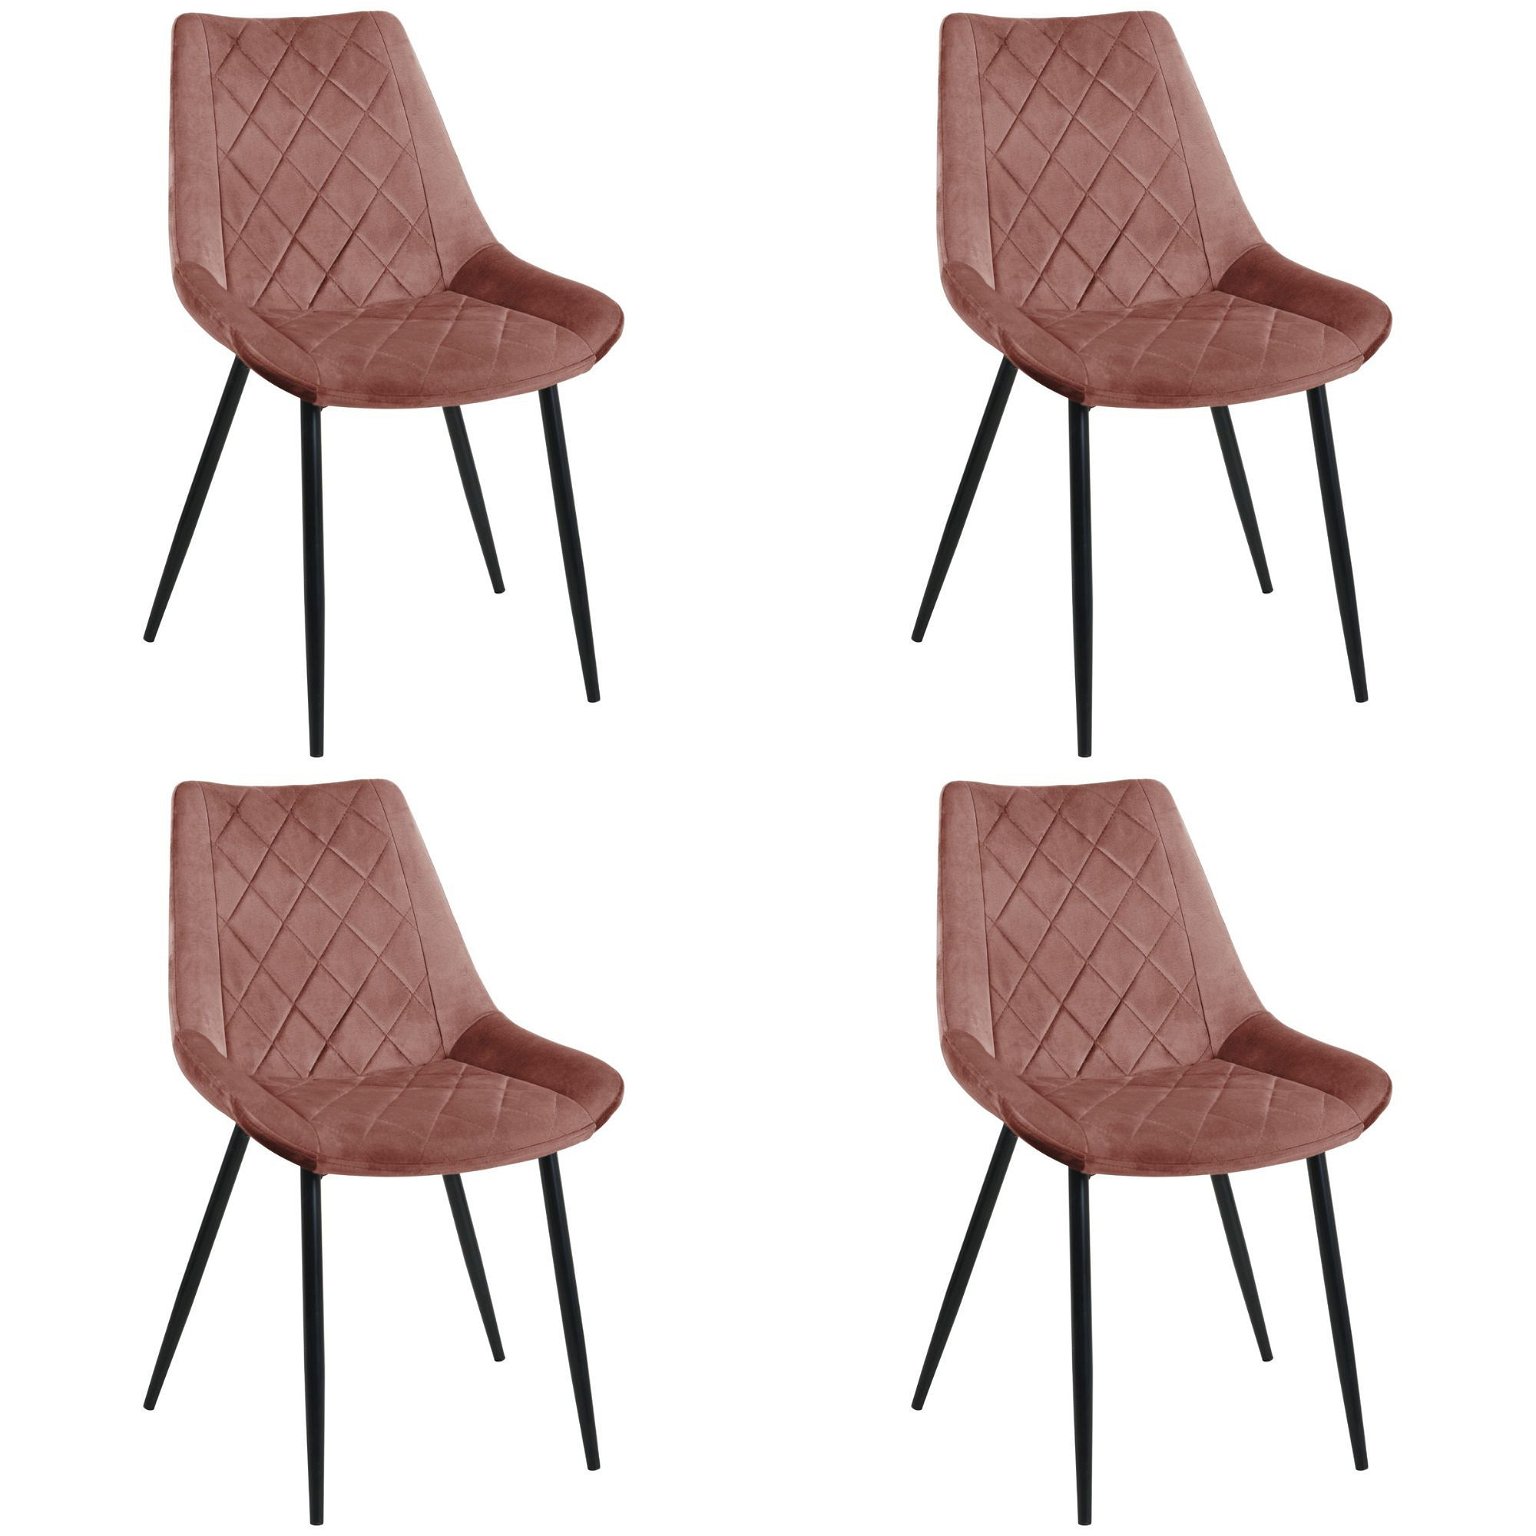 4-ių kėdžių komplektas SJ.0488, rožinė